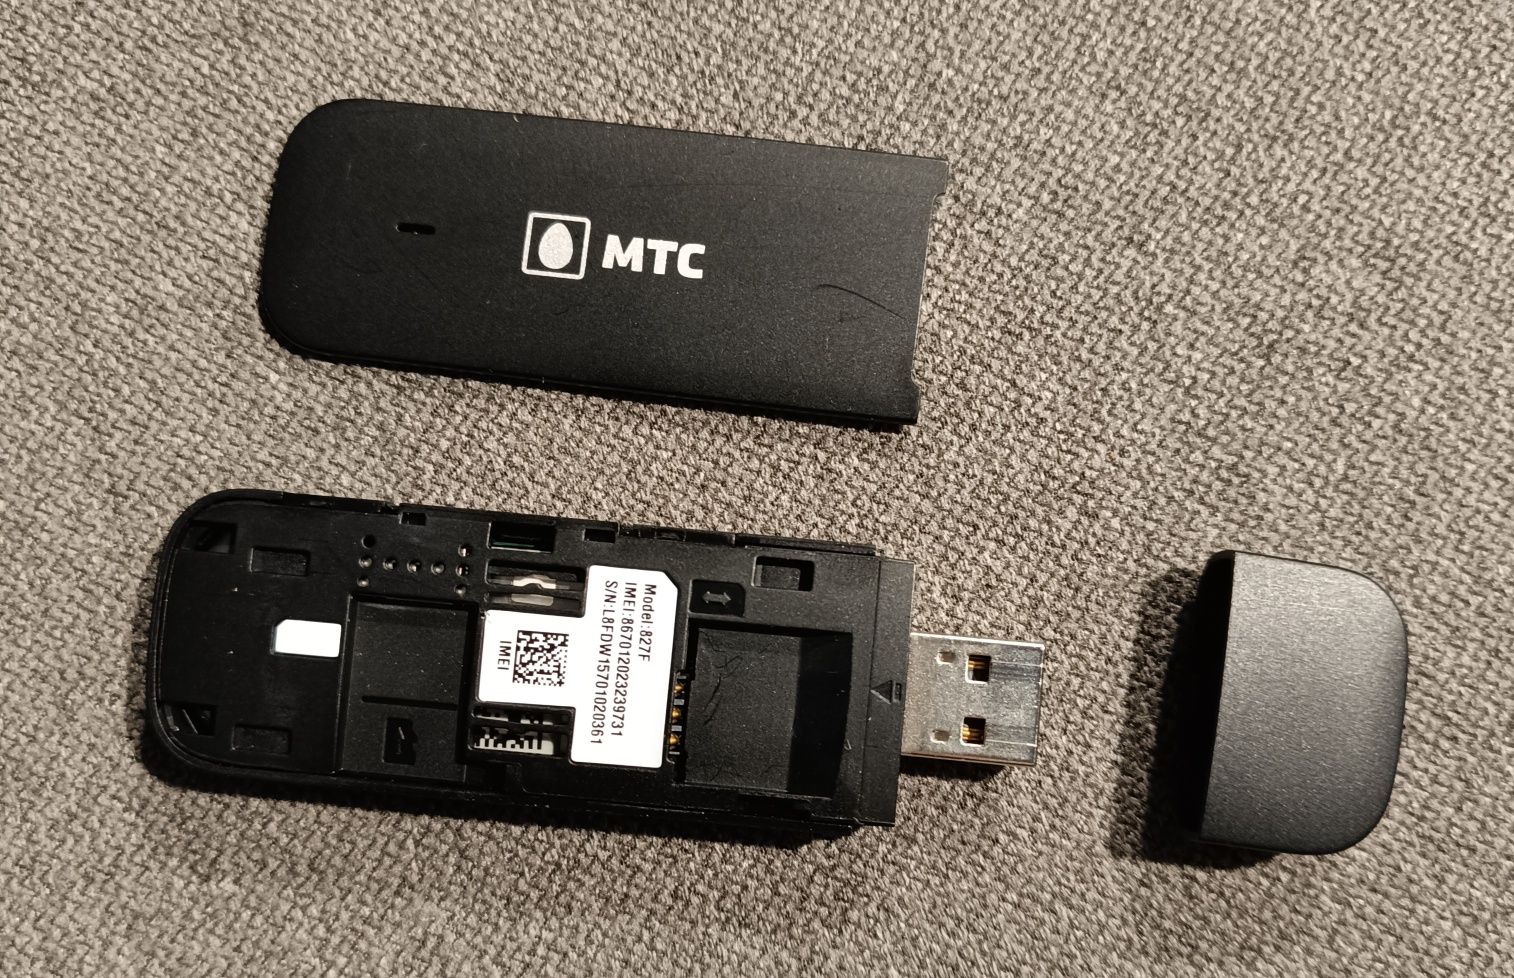 Modem USB 827F MTC